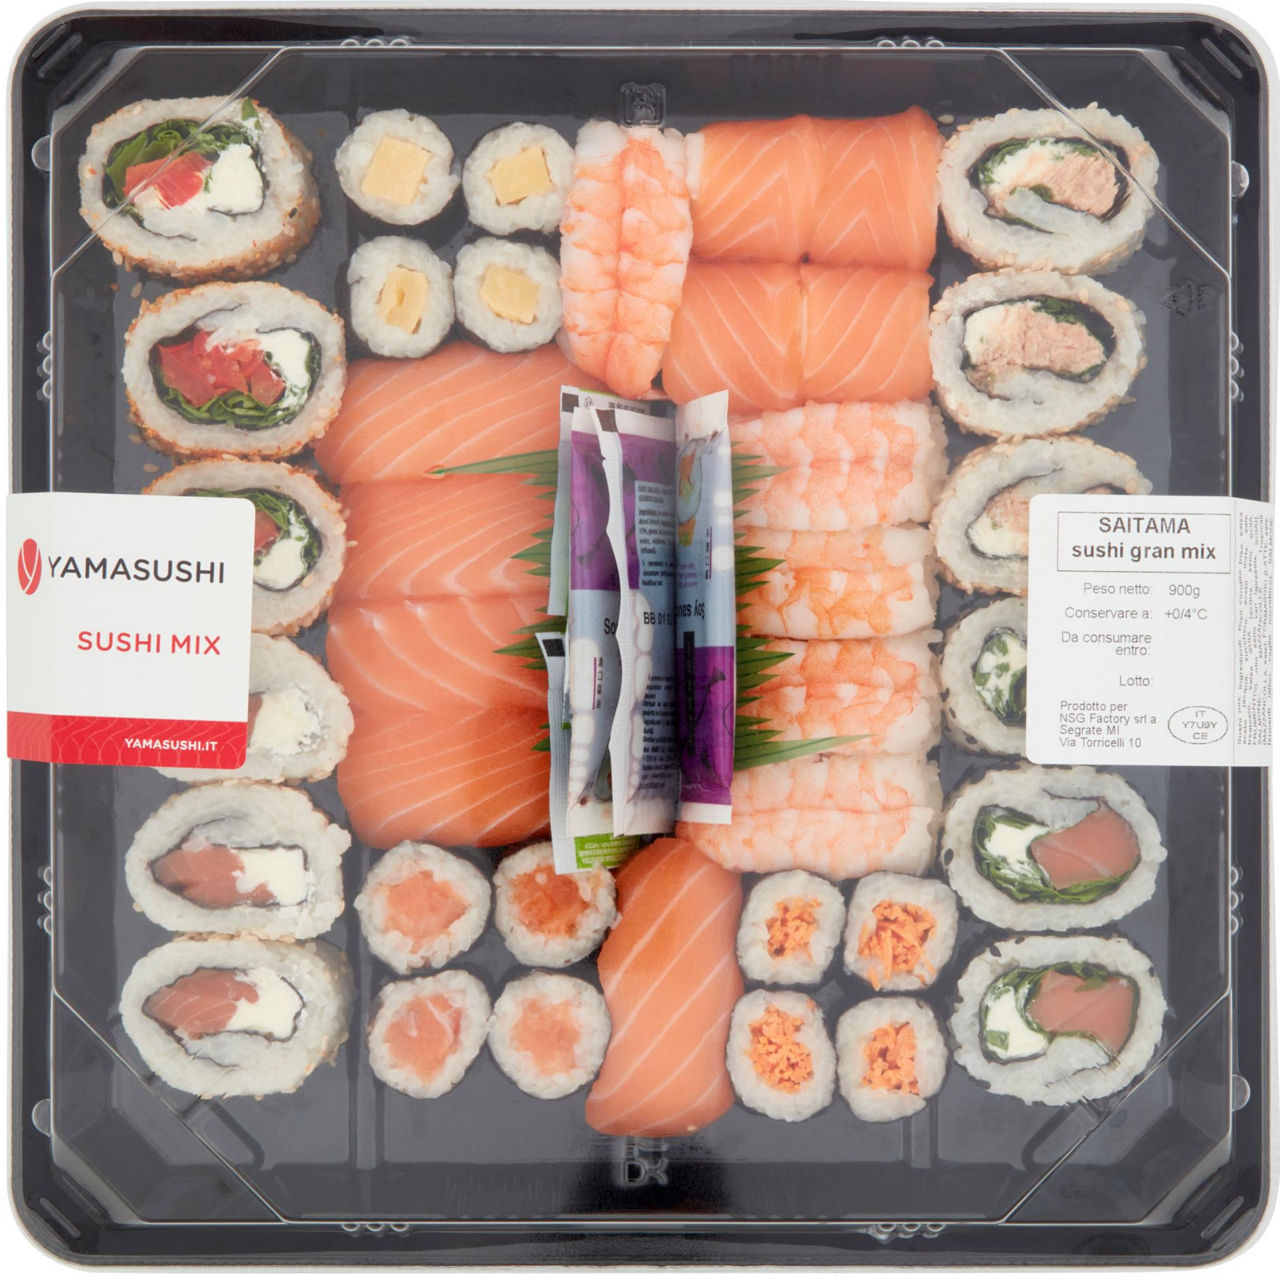 Saitama sushi 900 g